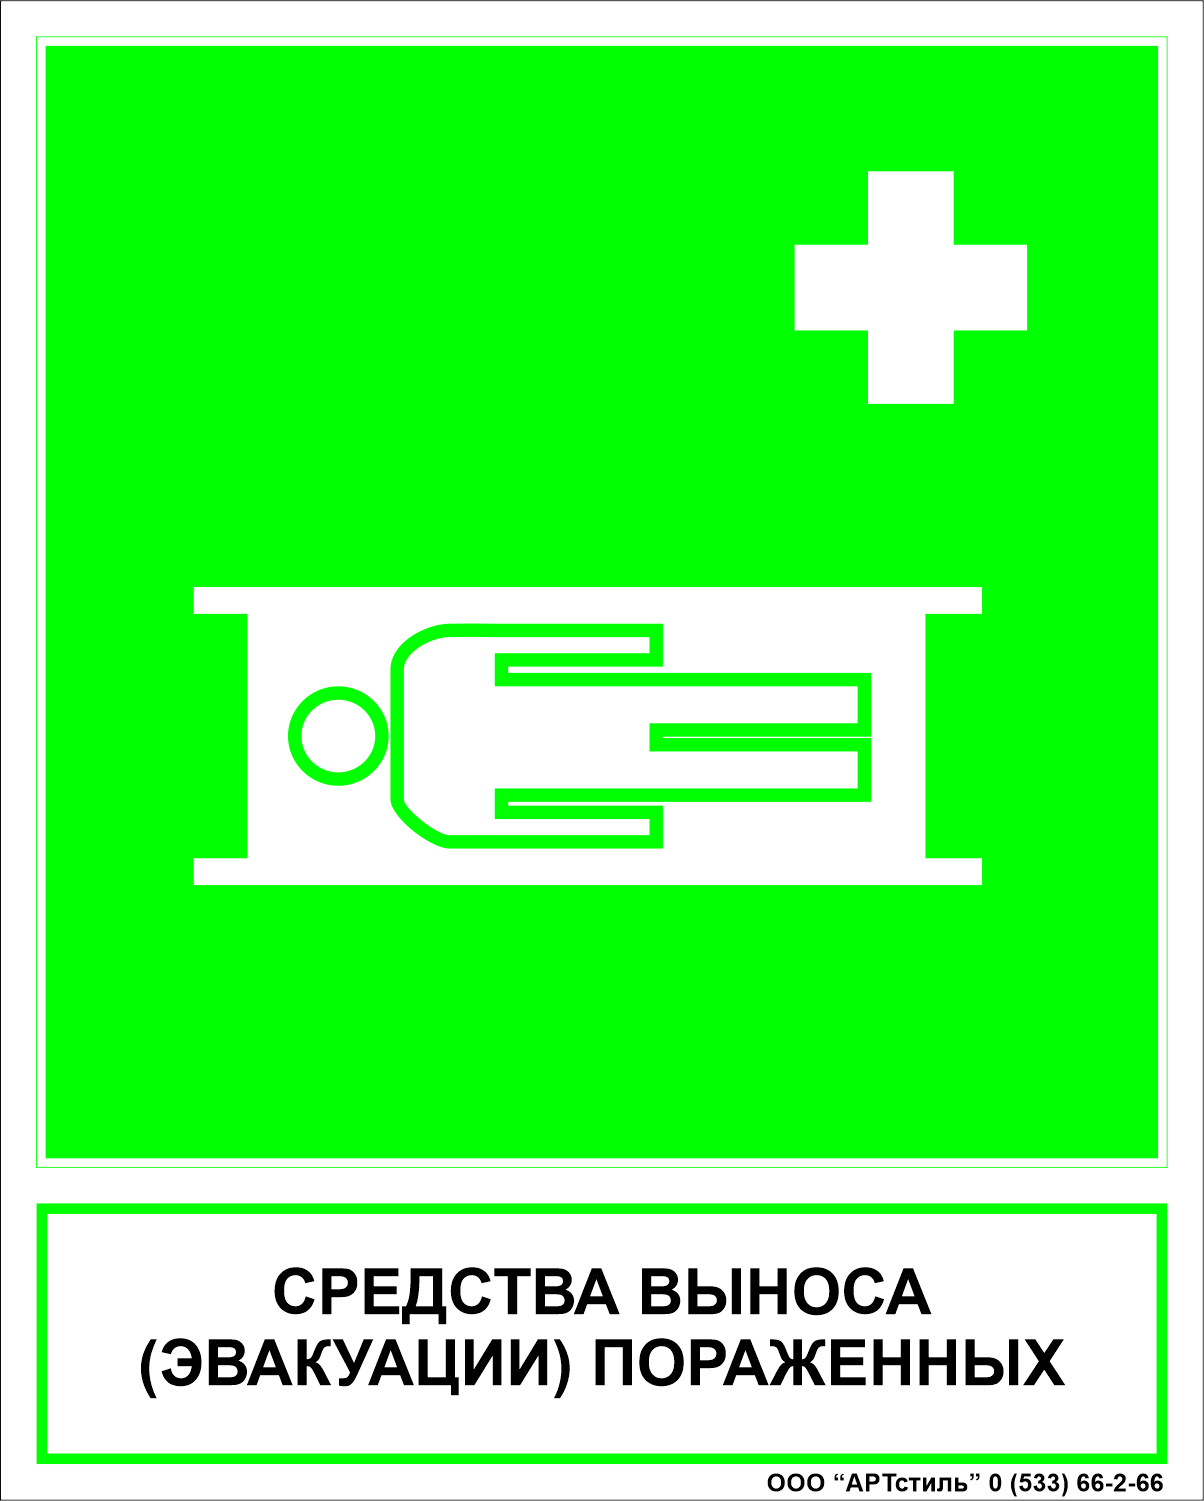 Знаки безопасности медицинского назначения ЕС-02